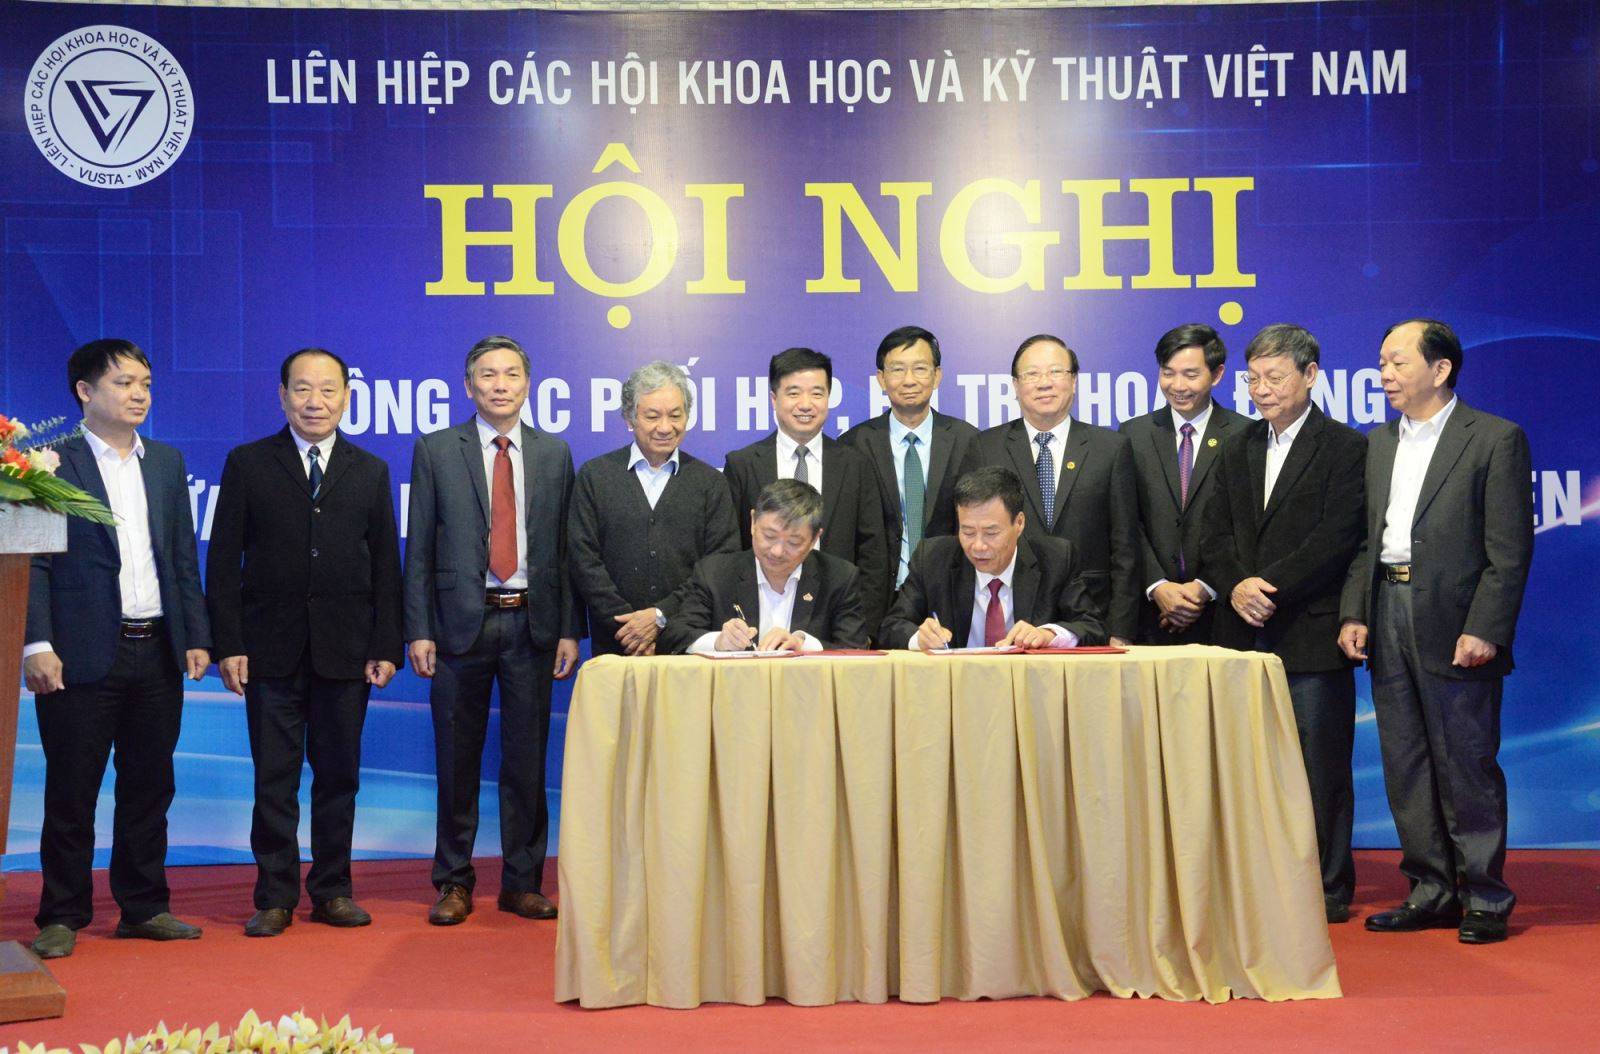 Tổng hội Xây dựng Việt Nam ký kết hợp tác với Liên hiệp các hội khoa học và kỹ thuật tỉnh Vĩnh Phúc - Ảnh 1